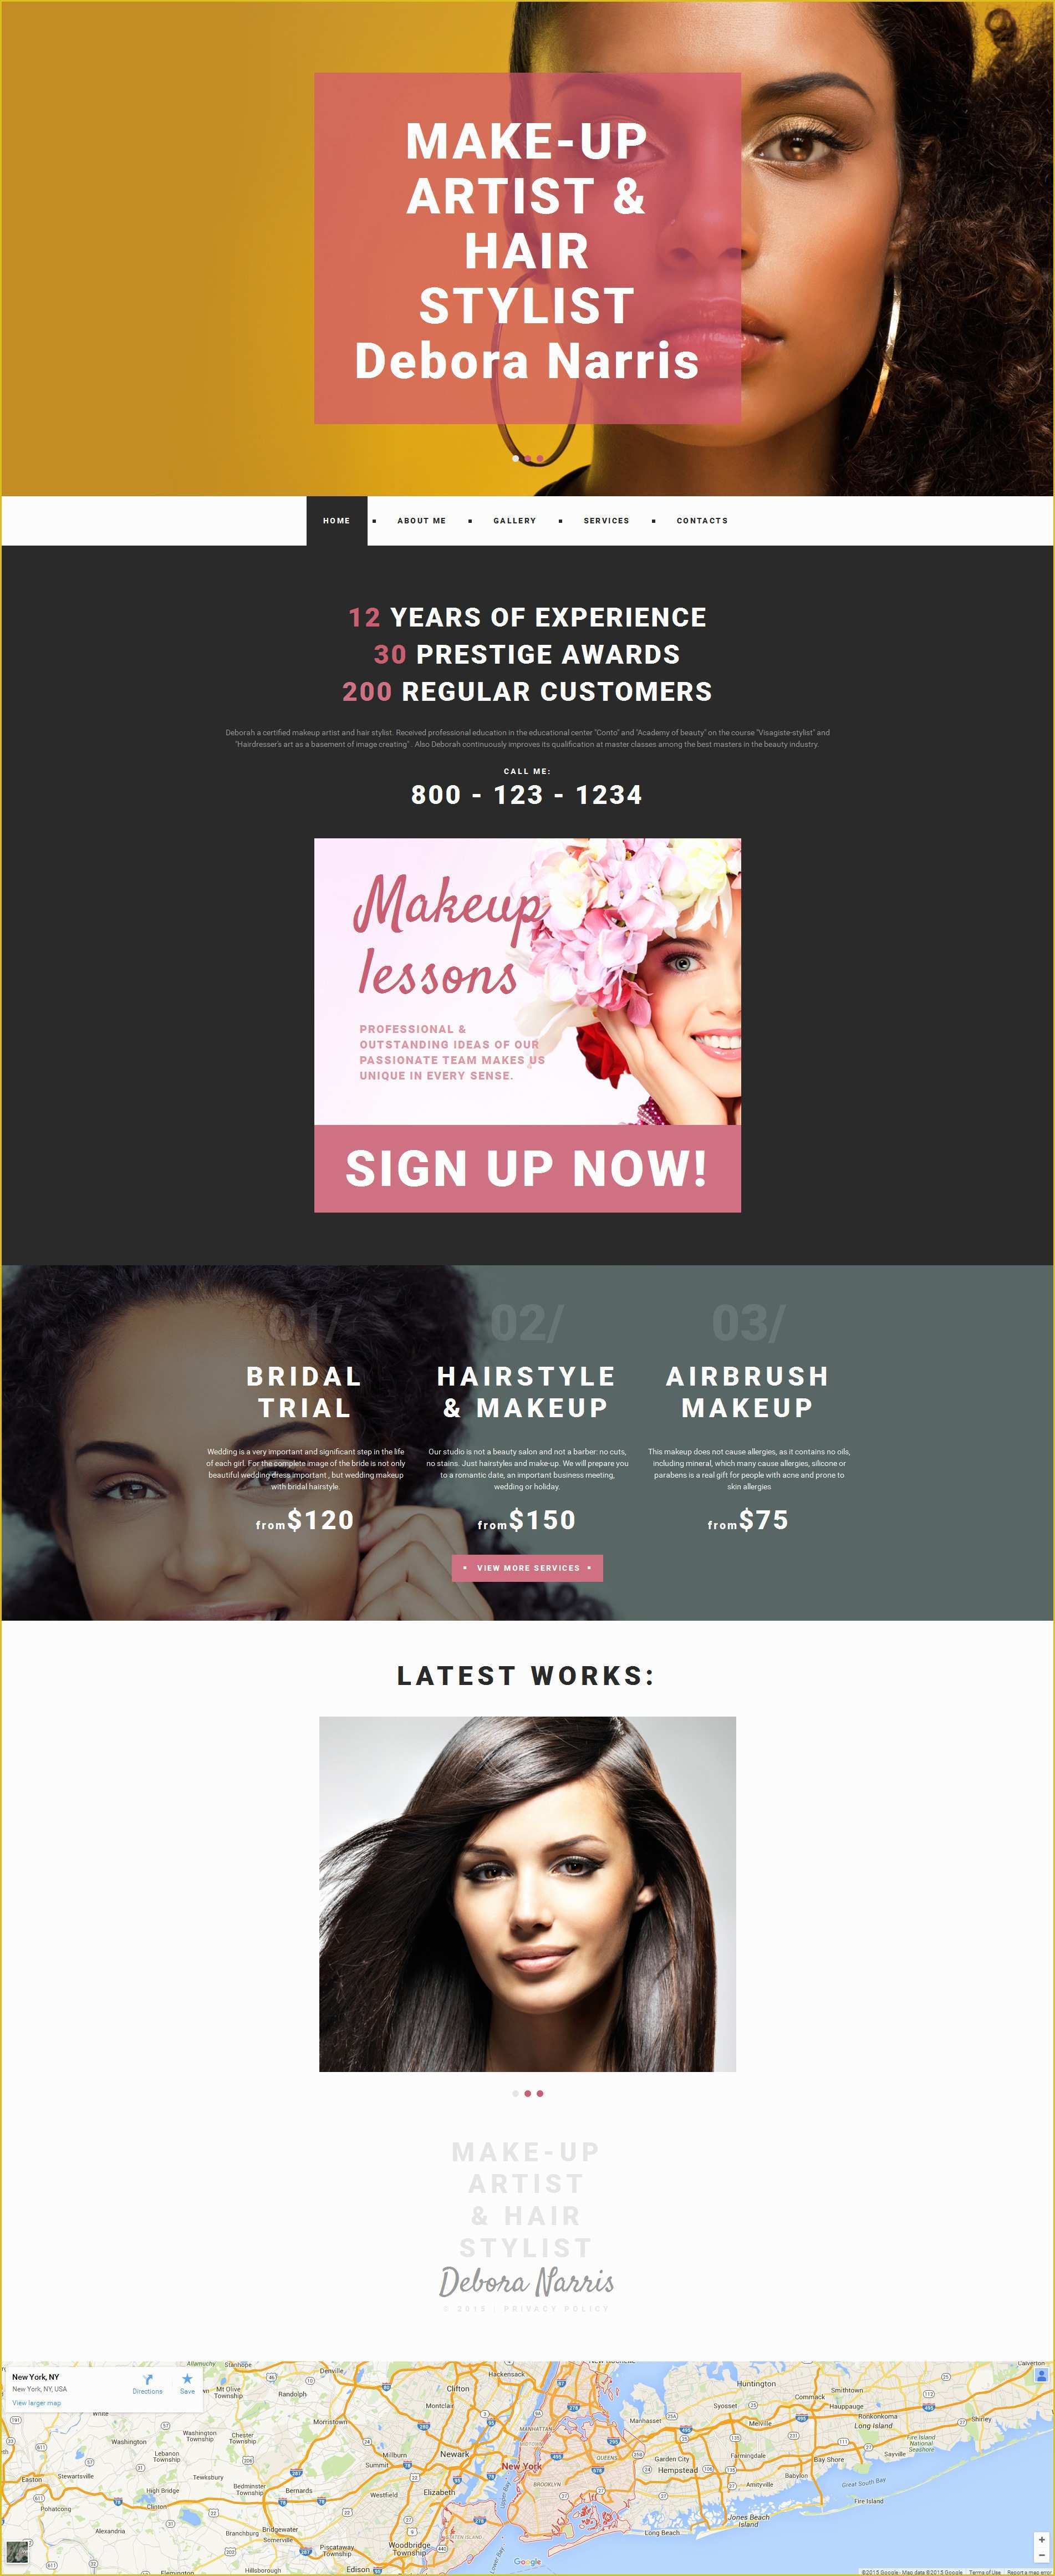 Free Website Templates for Makeup Artist Of Make Up Artist Website Builder